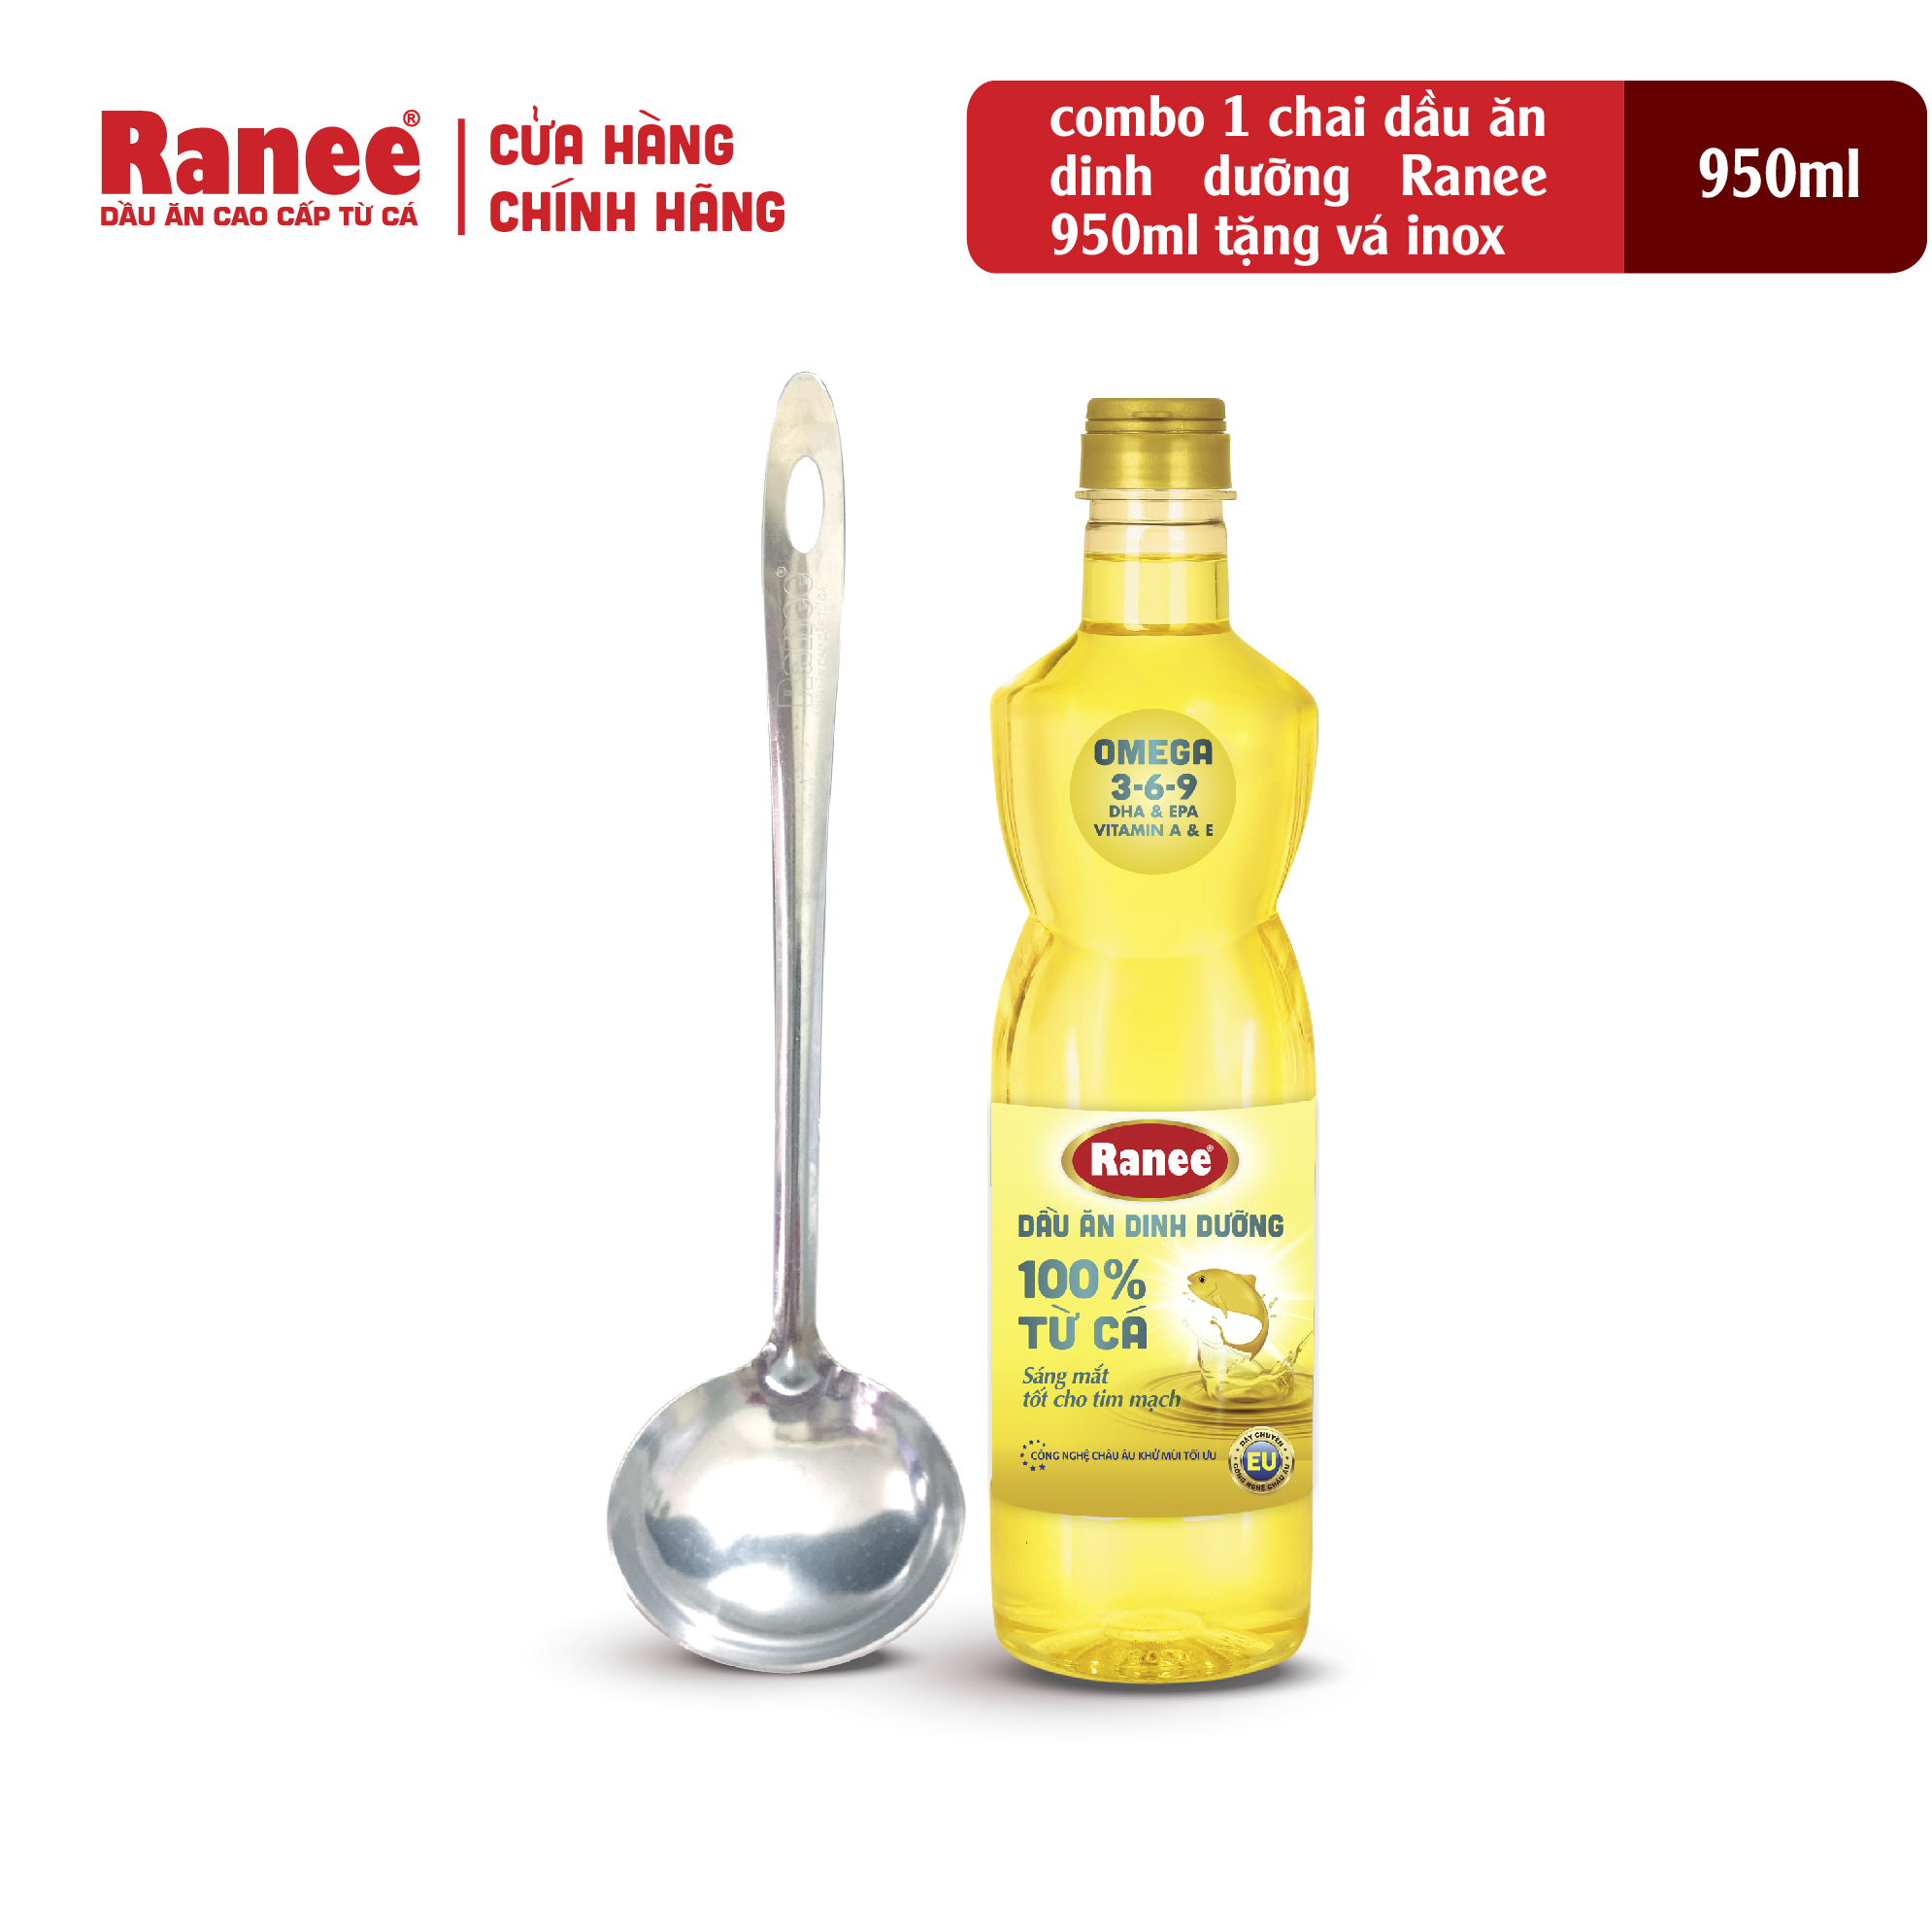 Hình ảnh Combo 1 chai dầu ăn dinh dưỡng Ranee 950ml tặng kèm vá inox